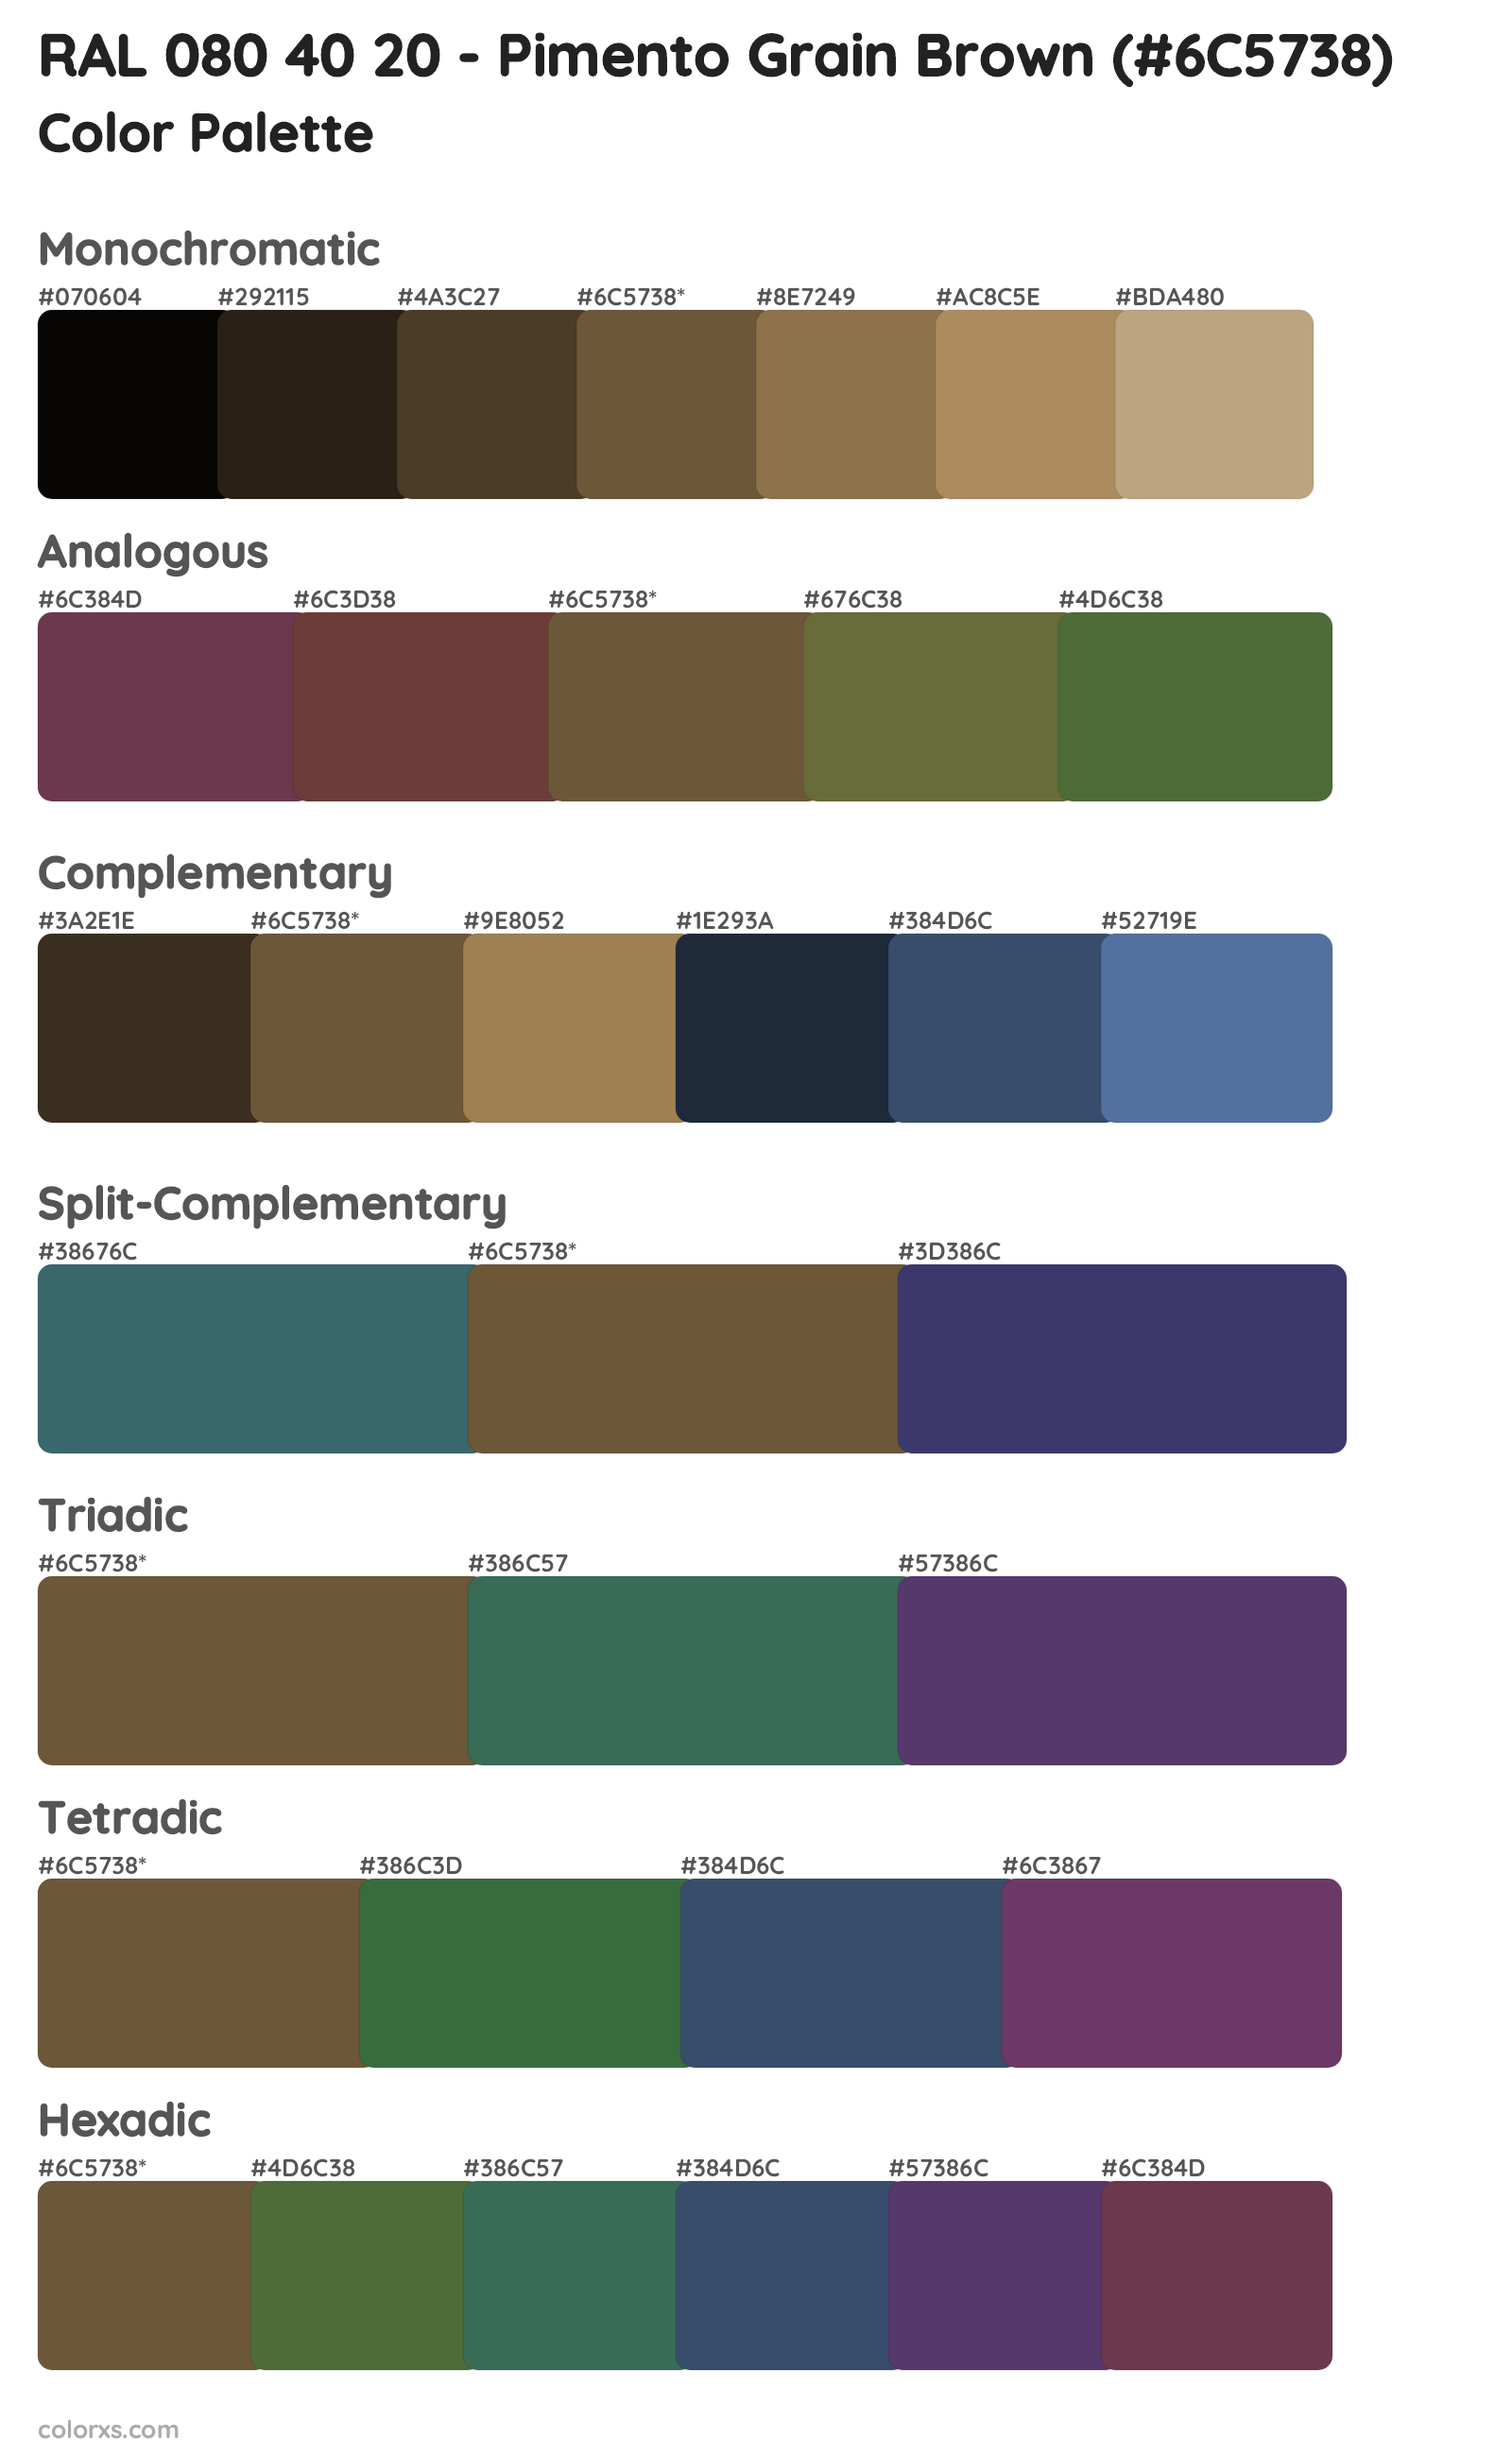 RAL 080 40 20 - Pimento Grain Brown Color Scheme Palettes